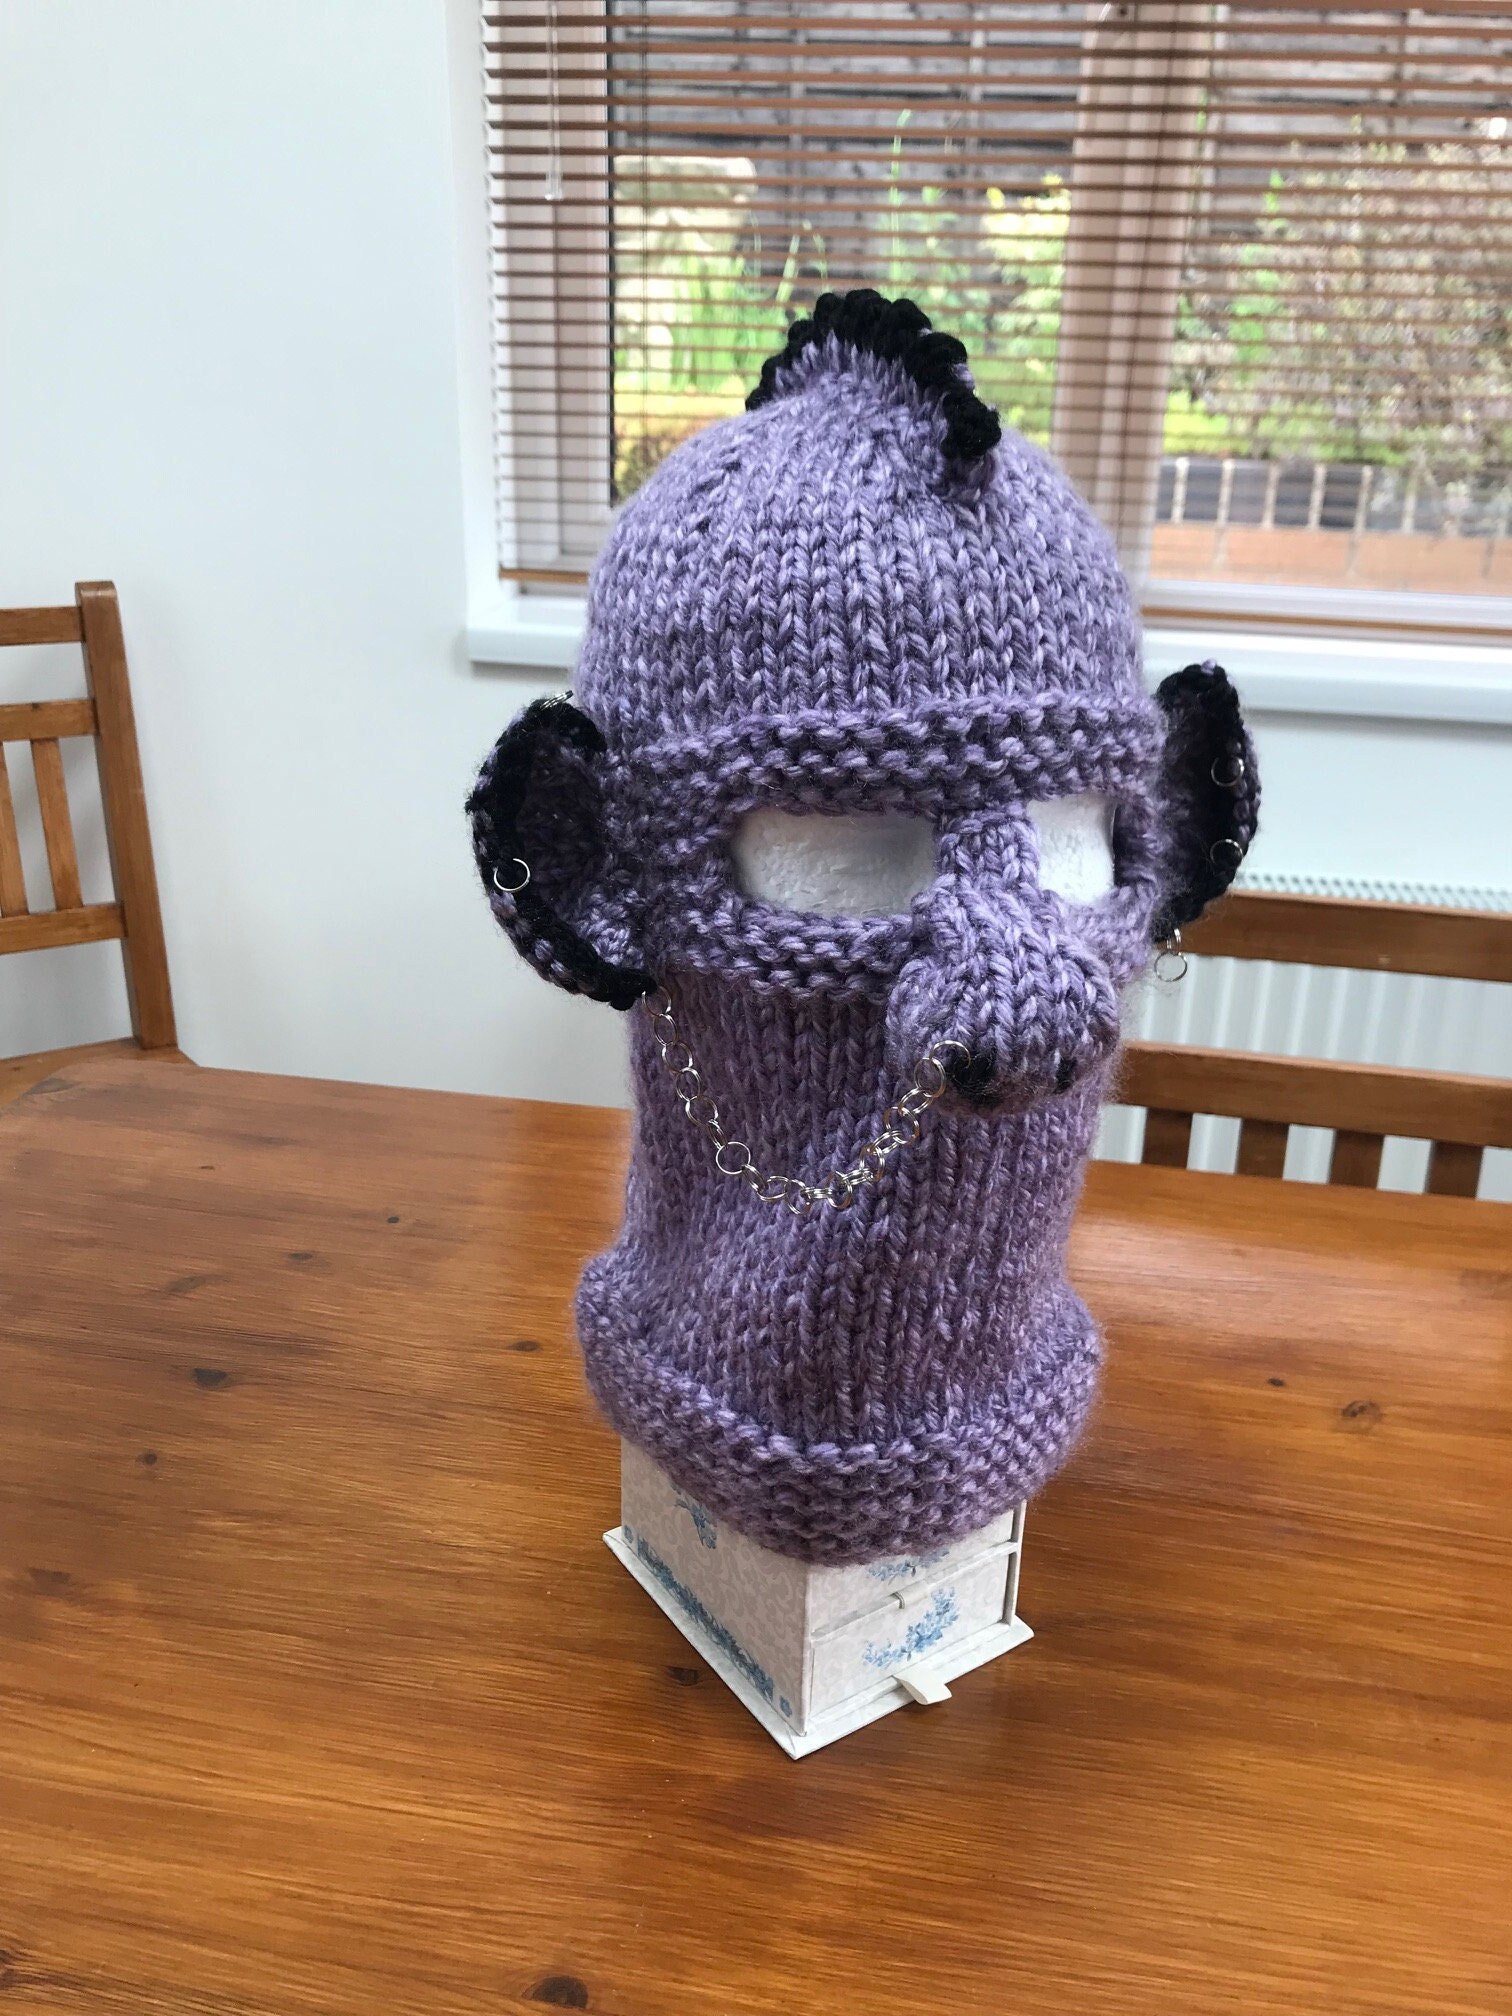 Crochet ski mask balaclava adult Face helmet patel purple